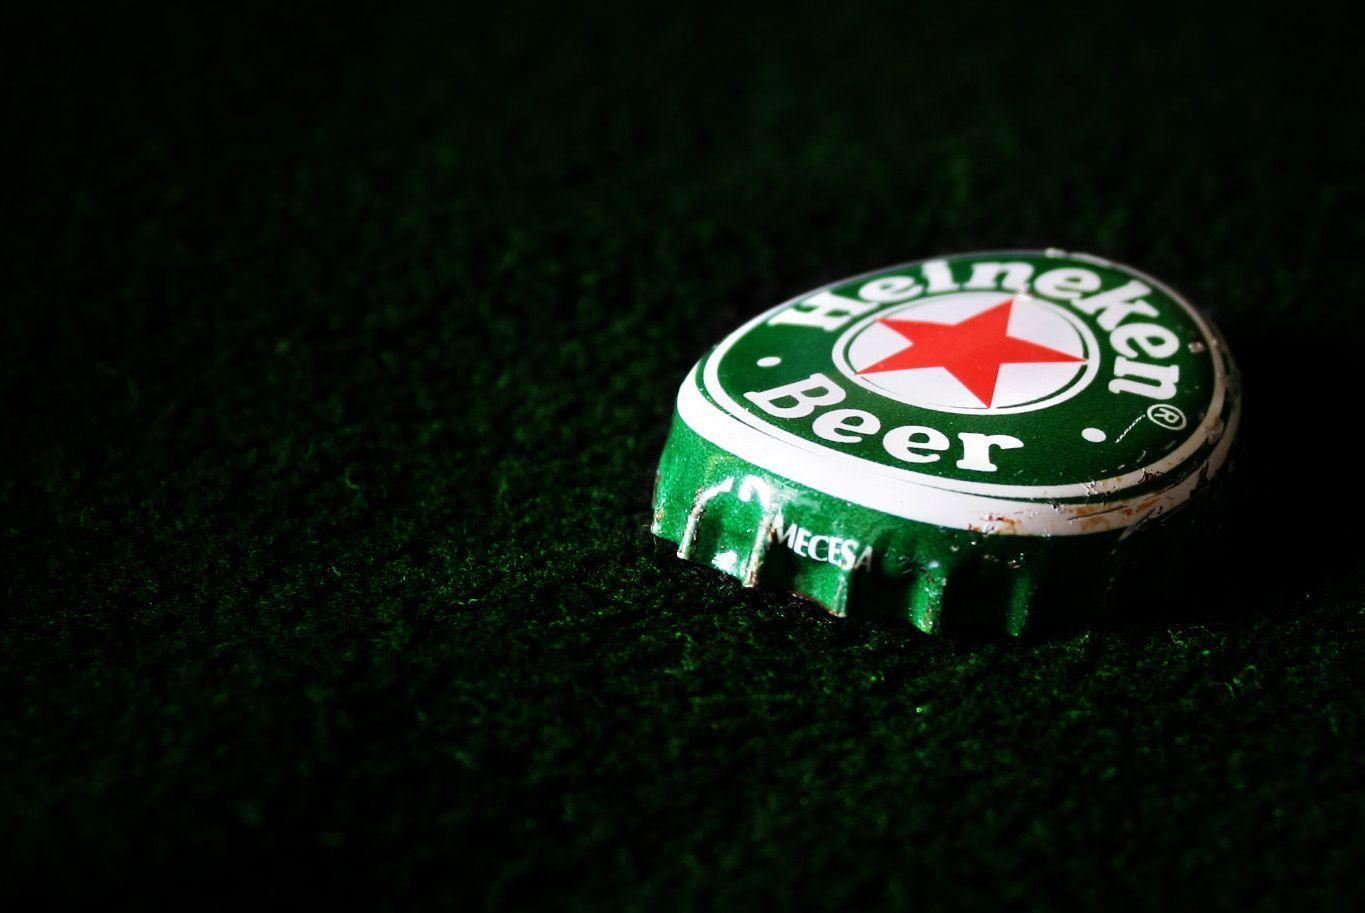 Download wallpaper: Heineken, wallpaper, beer, photo, wallpaper